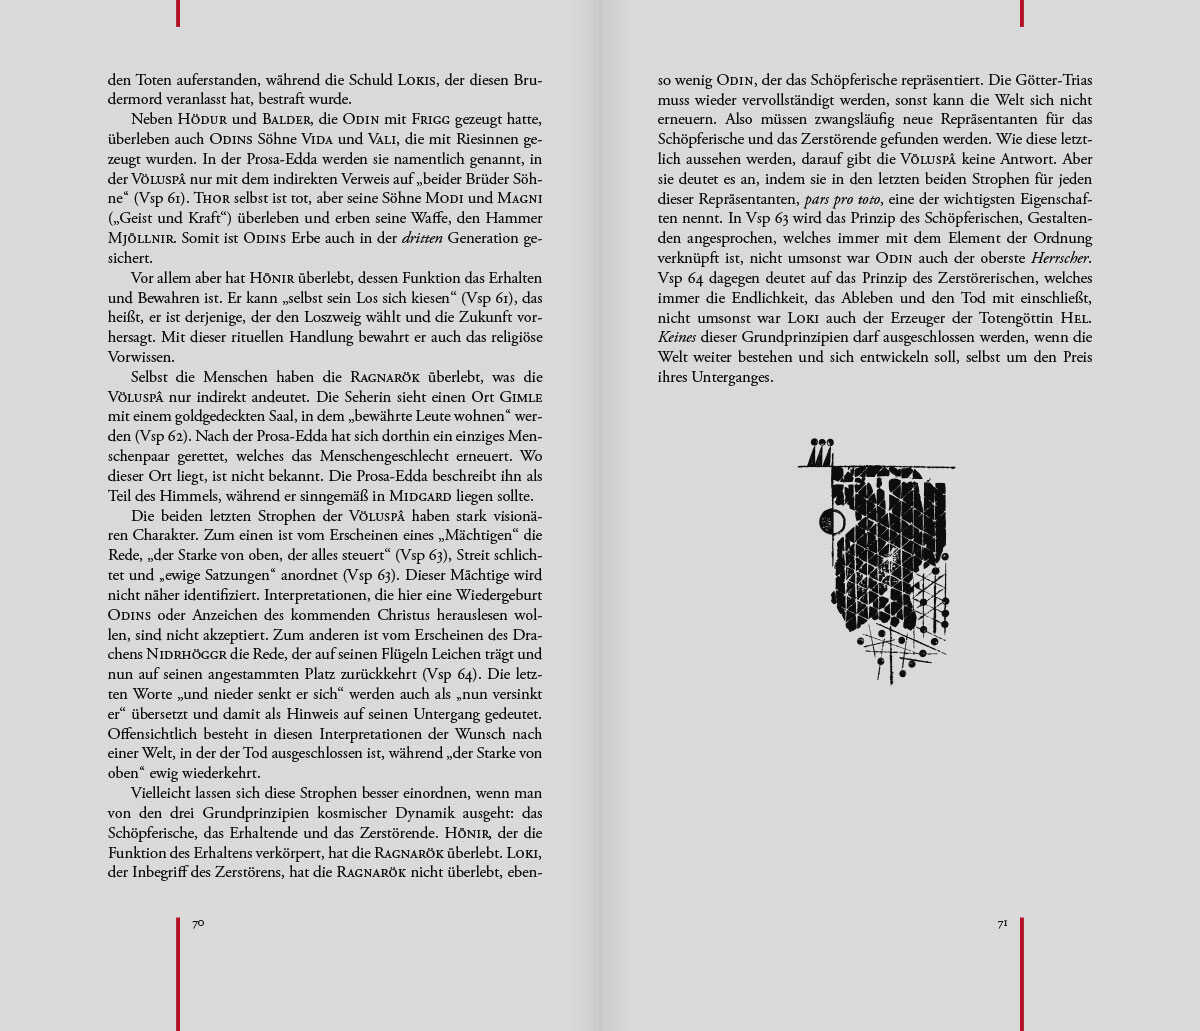 Buch Völuspa, Die Vision von Anfang und Ende, Seite 70 und 71 mit Illustration und Essay